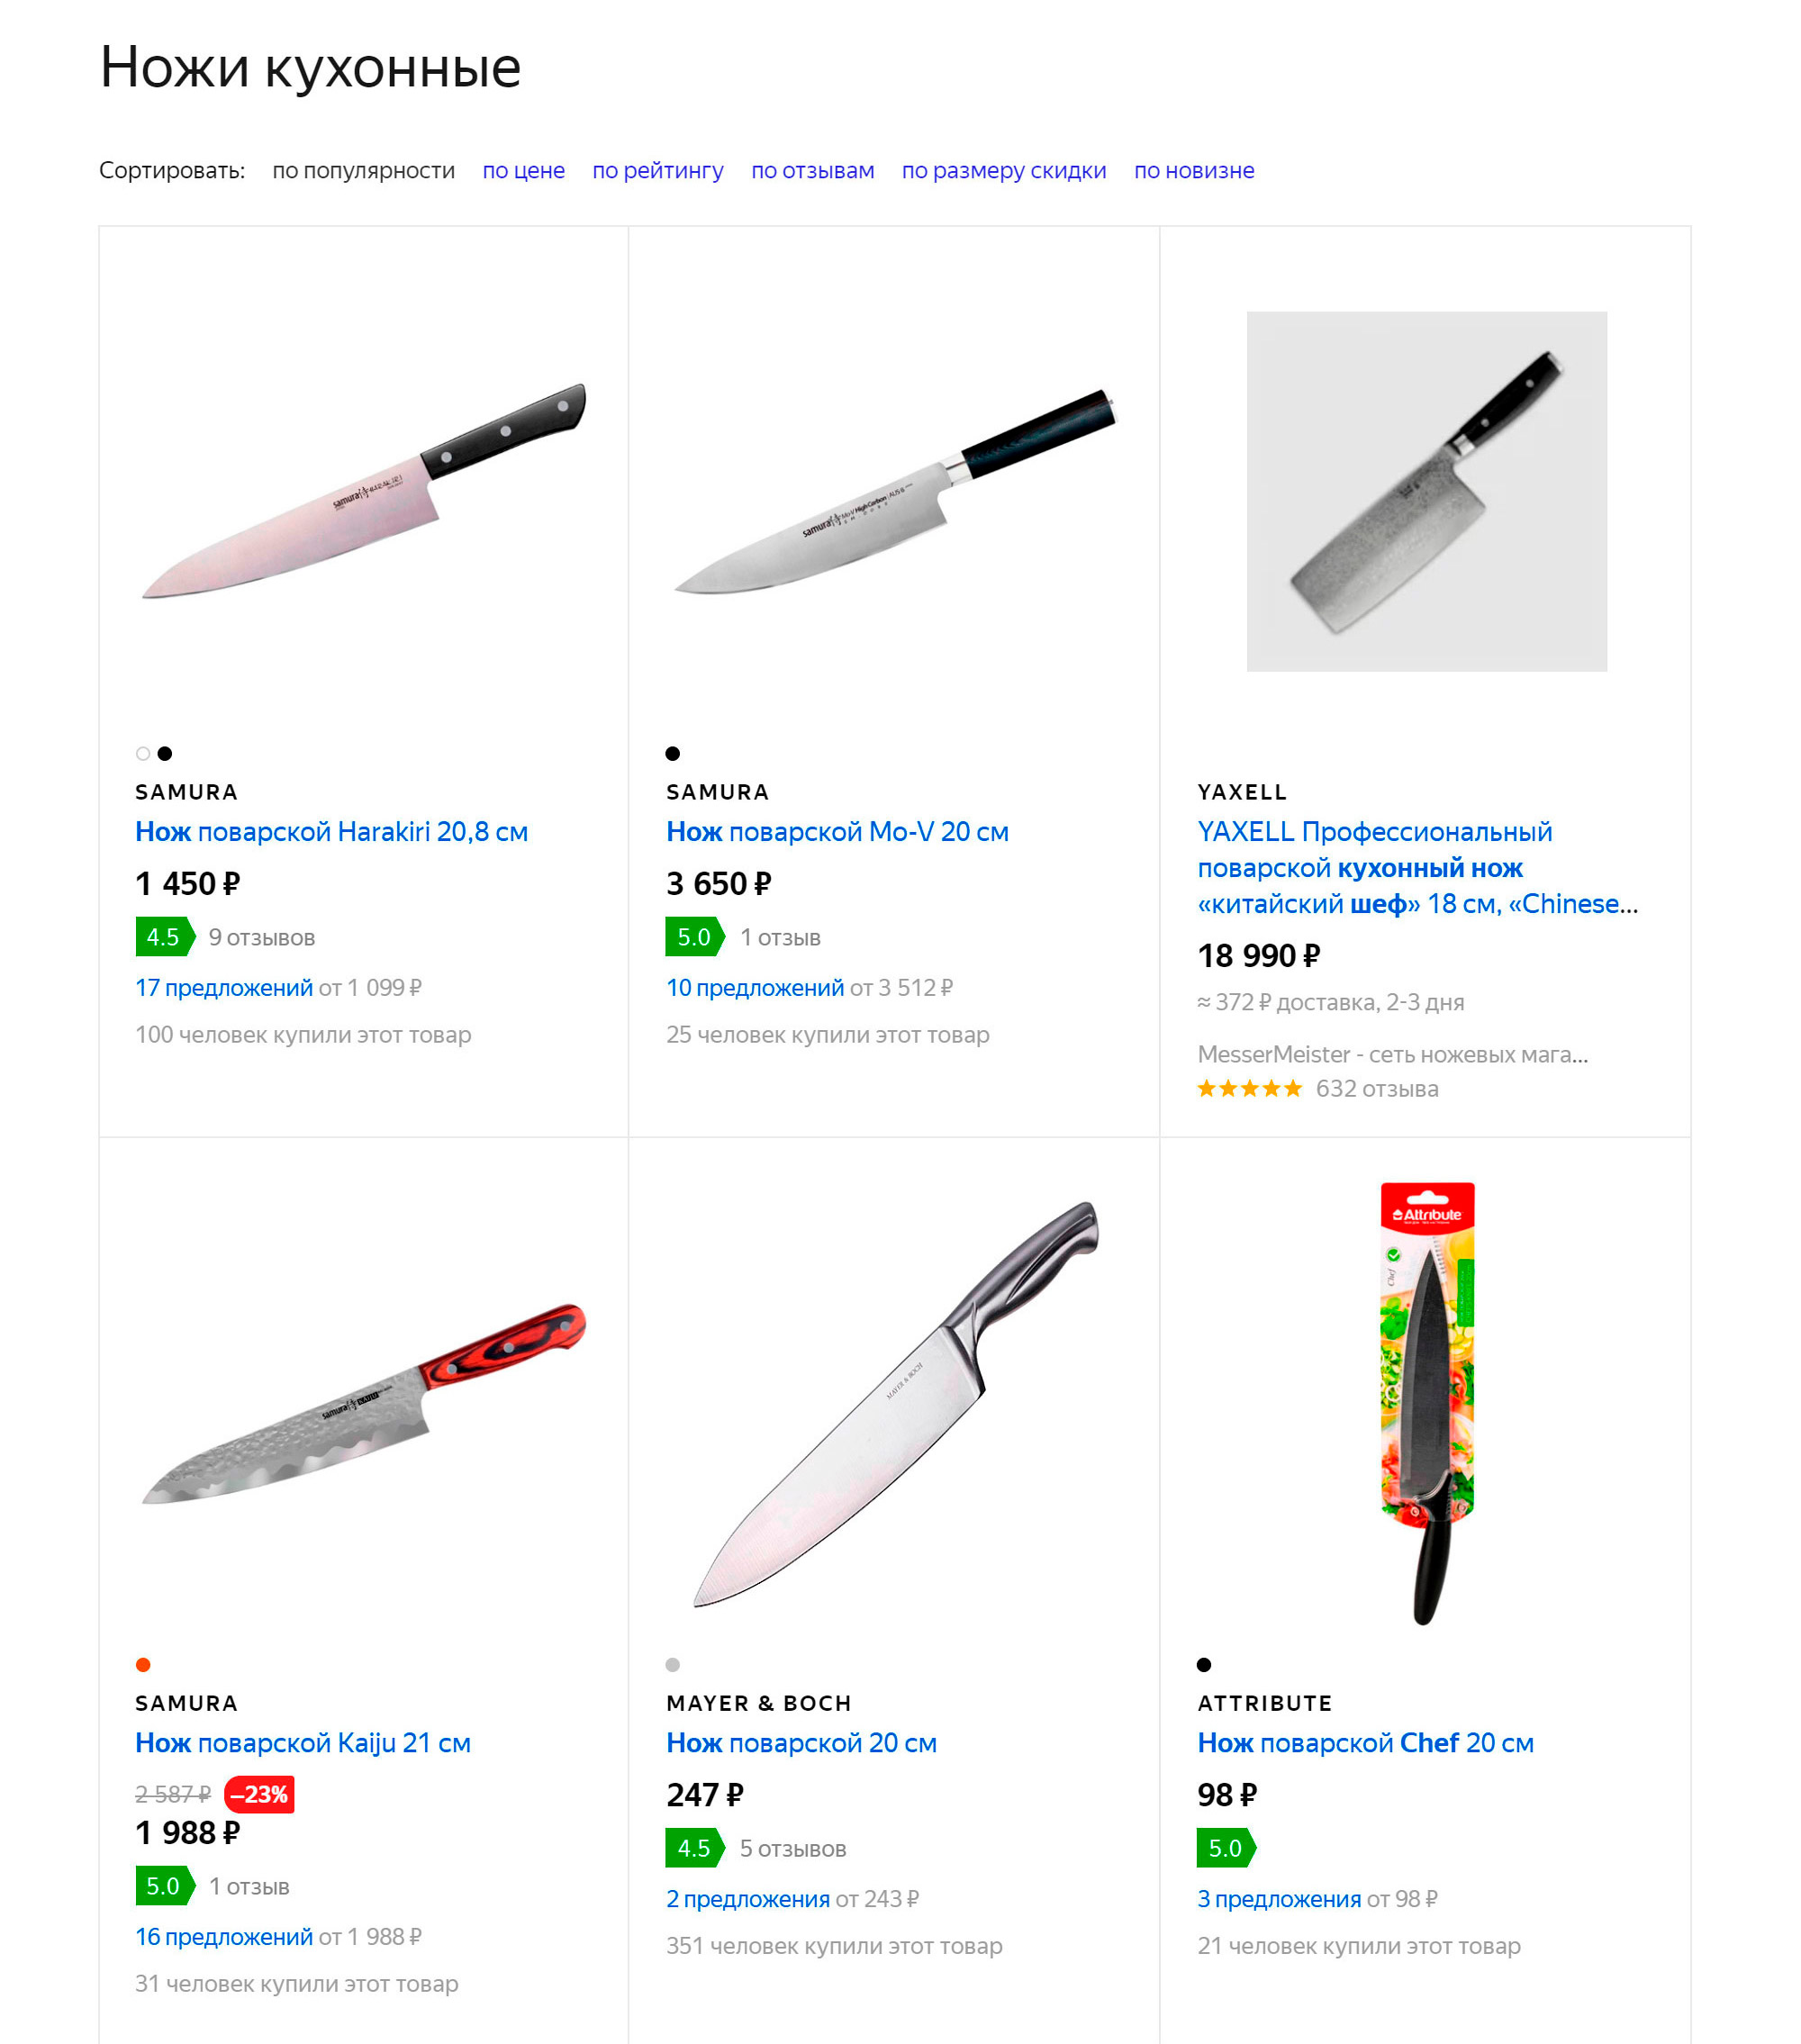 На «Яндекс-маркете» стоимость шеф-ножей доходит до 14 290 ₽. Но для начала хватит недорогого ножа из нержавейки. А если понравится, можно посмотреть модели подороже